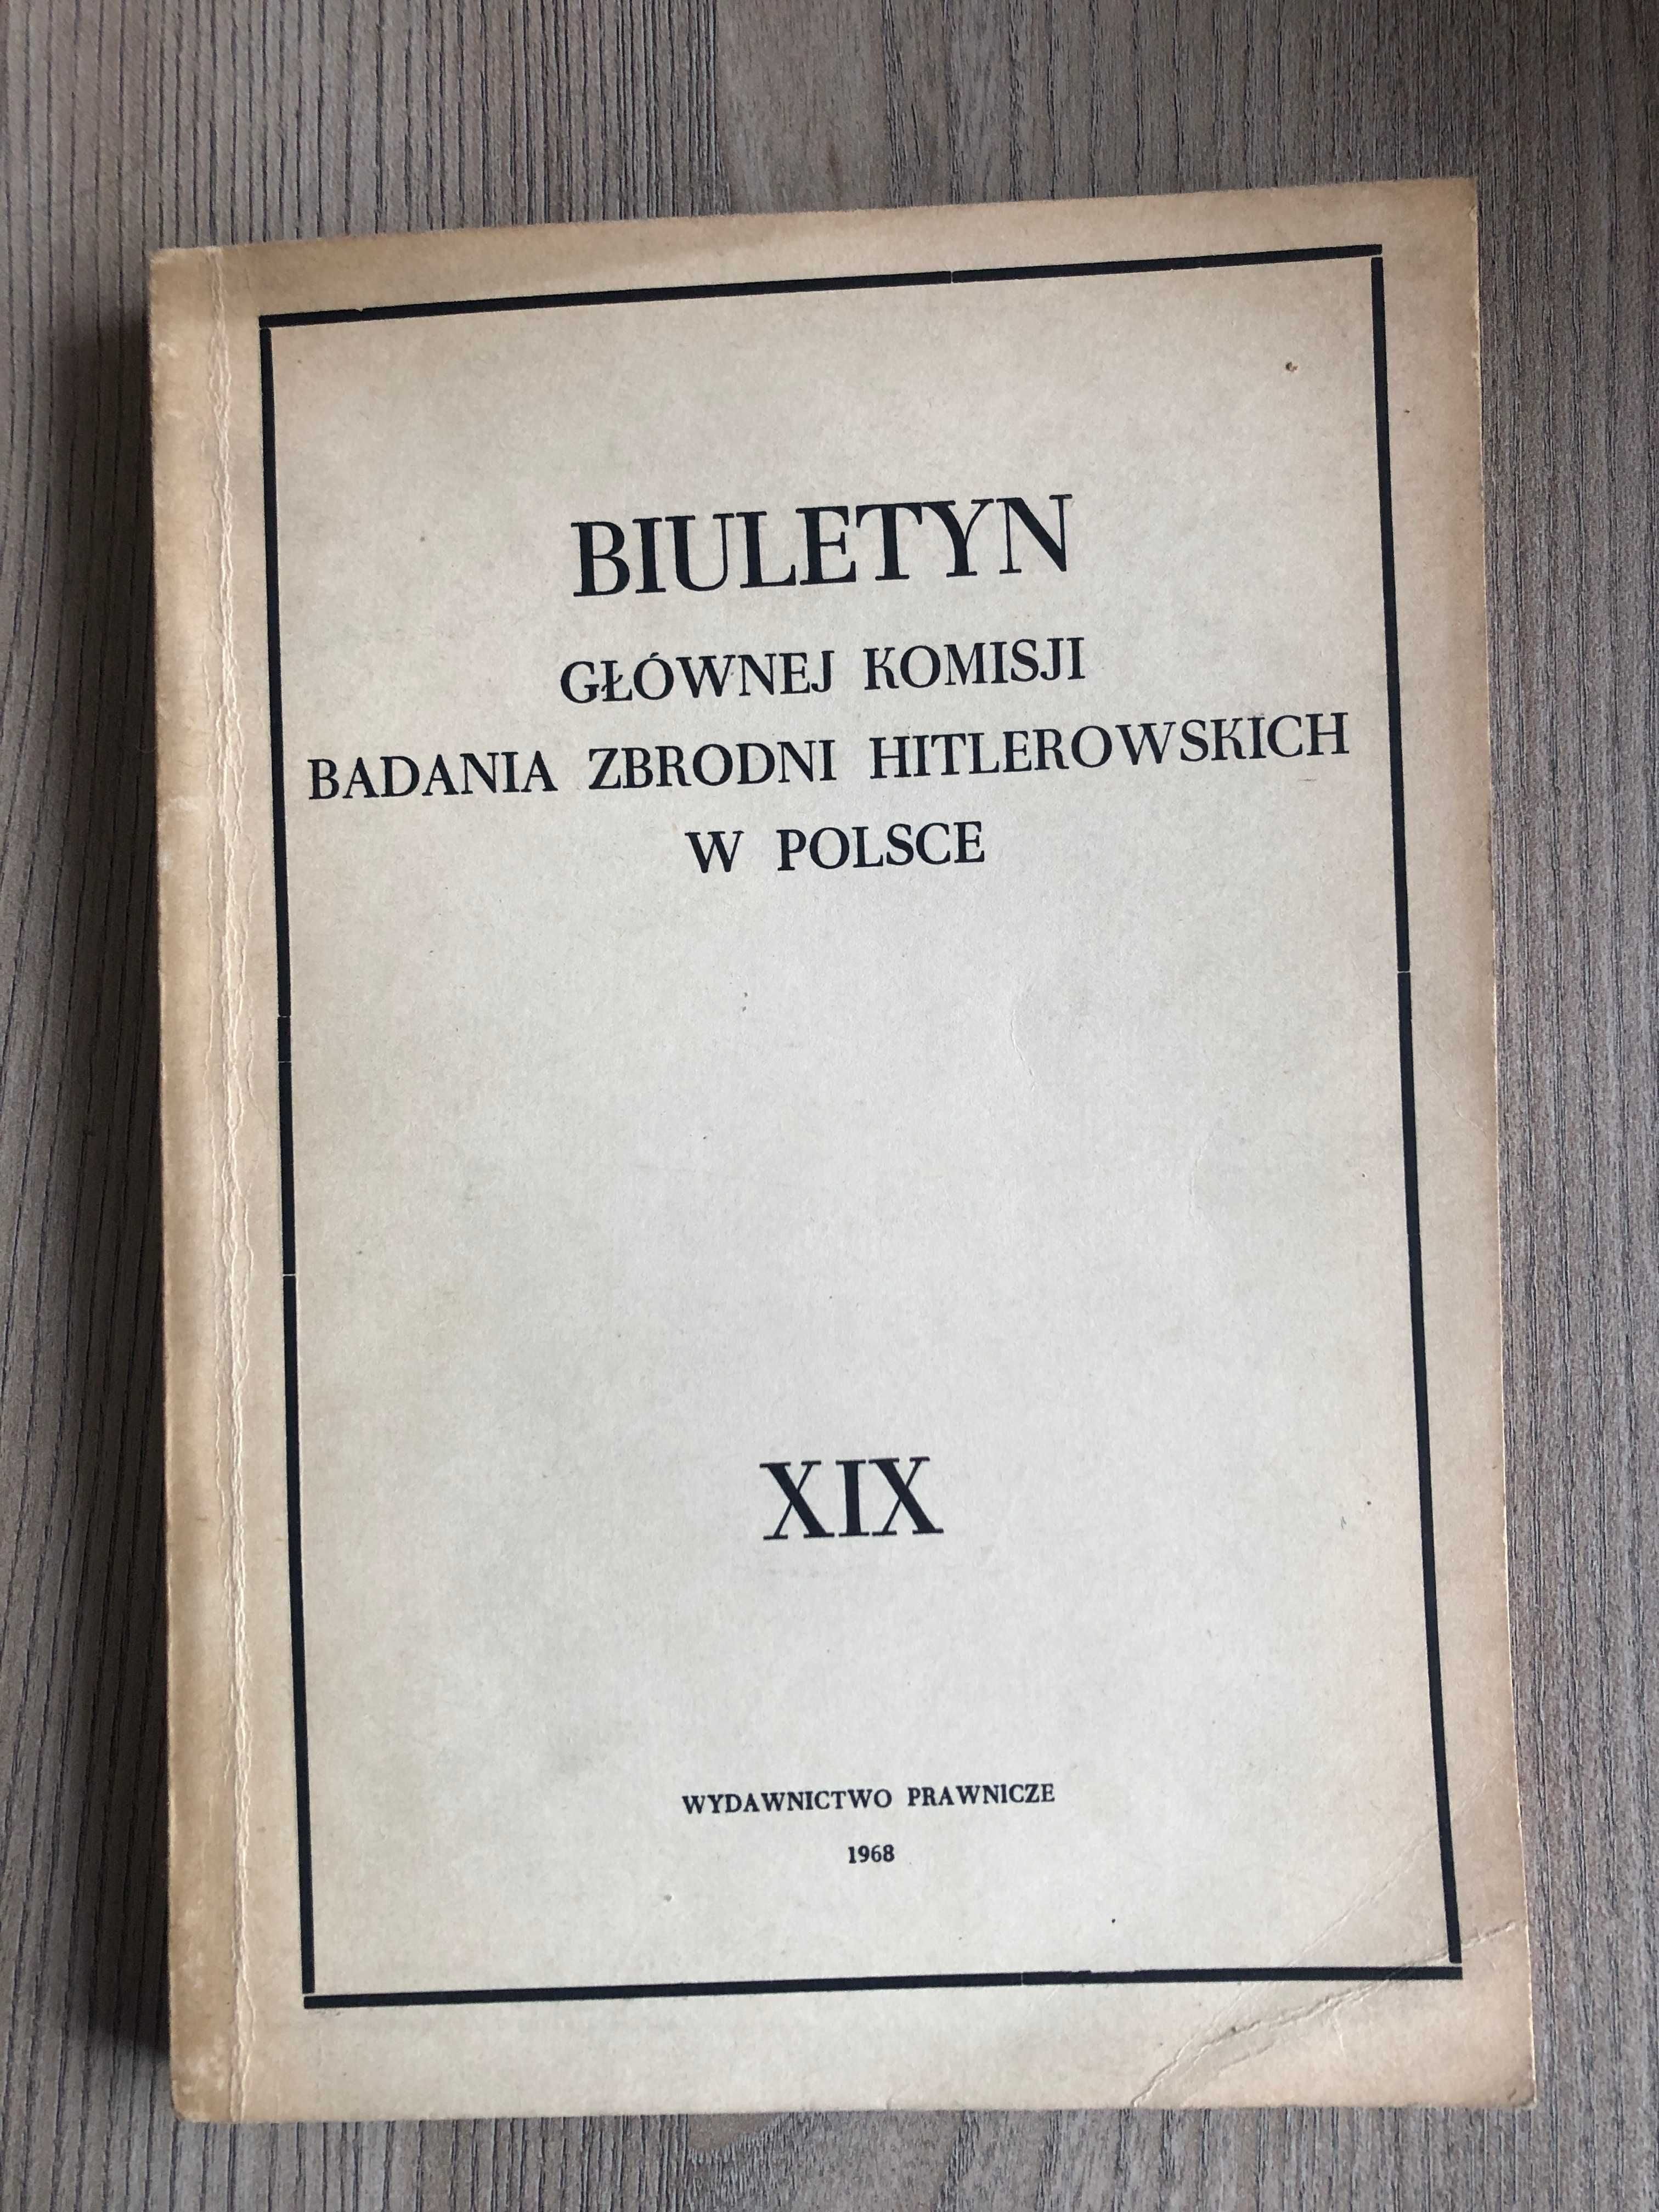 Biuletyn Głównej Komisji Badania Zbrodni Hitlerowskich w Polsce XIX